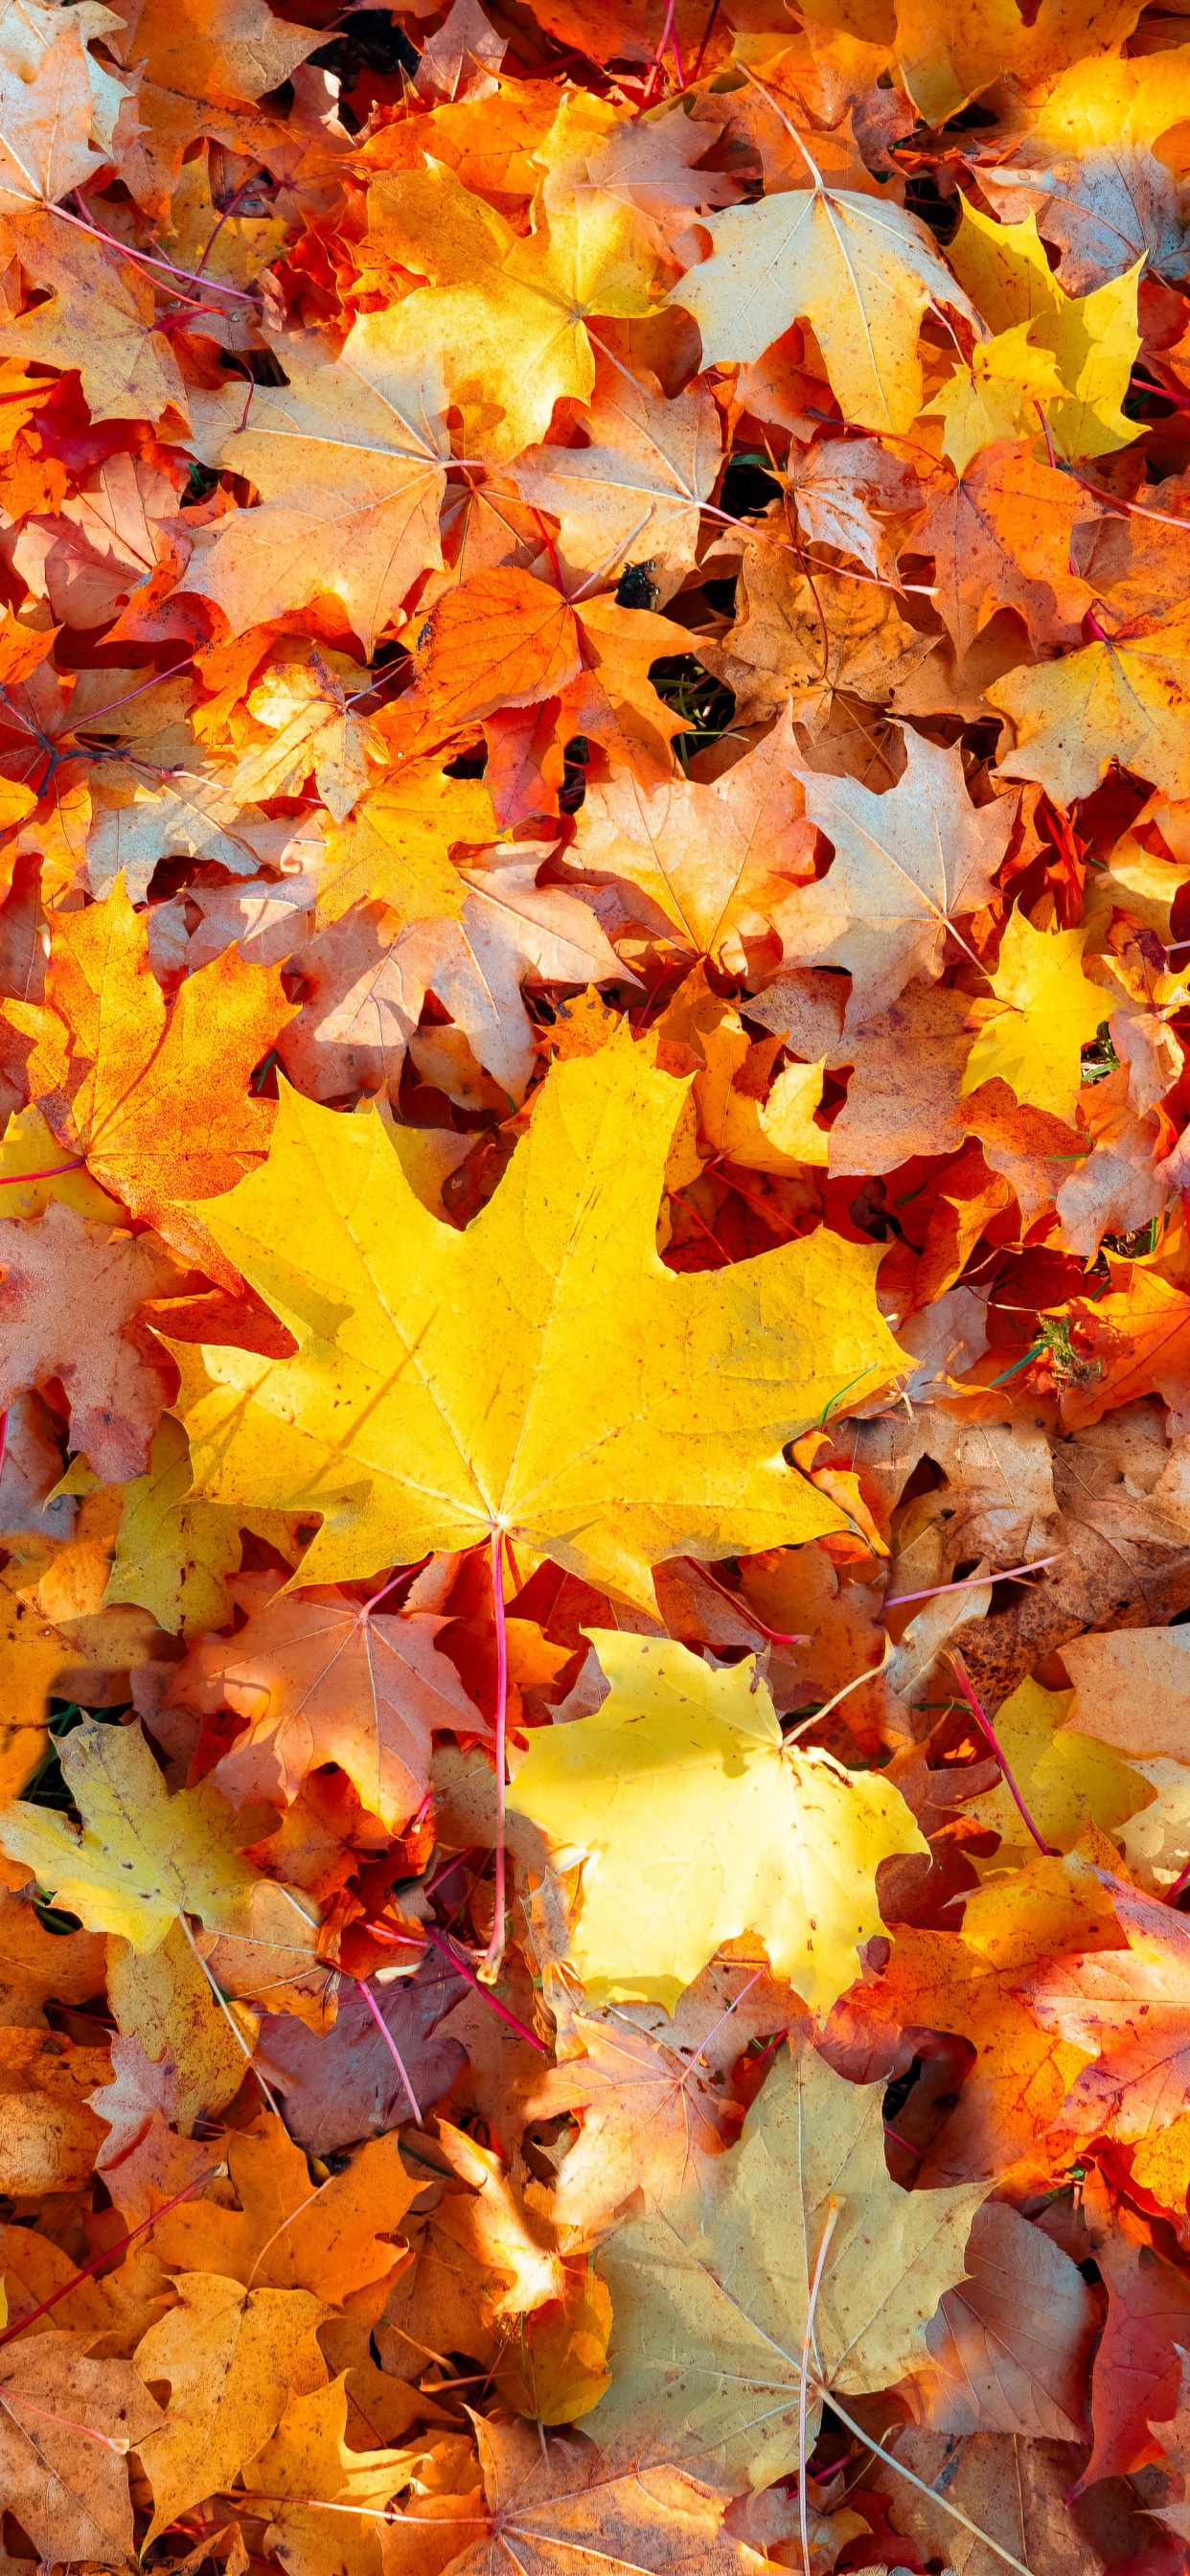 Maple leaves Wallpaper 4K, 5K, Autumn leaves, Fallen Leaves